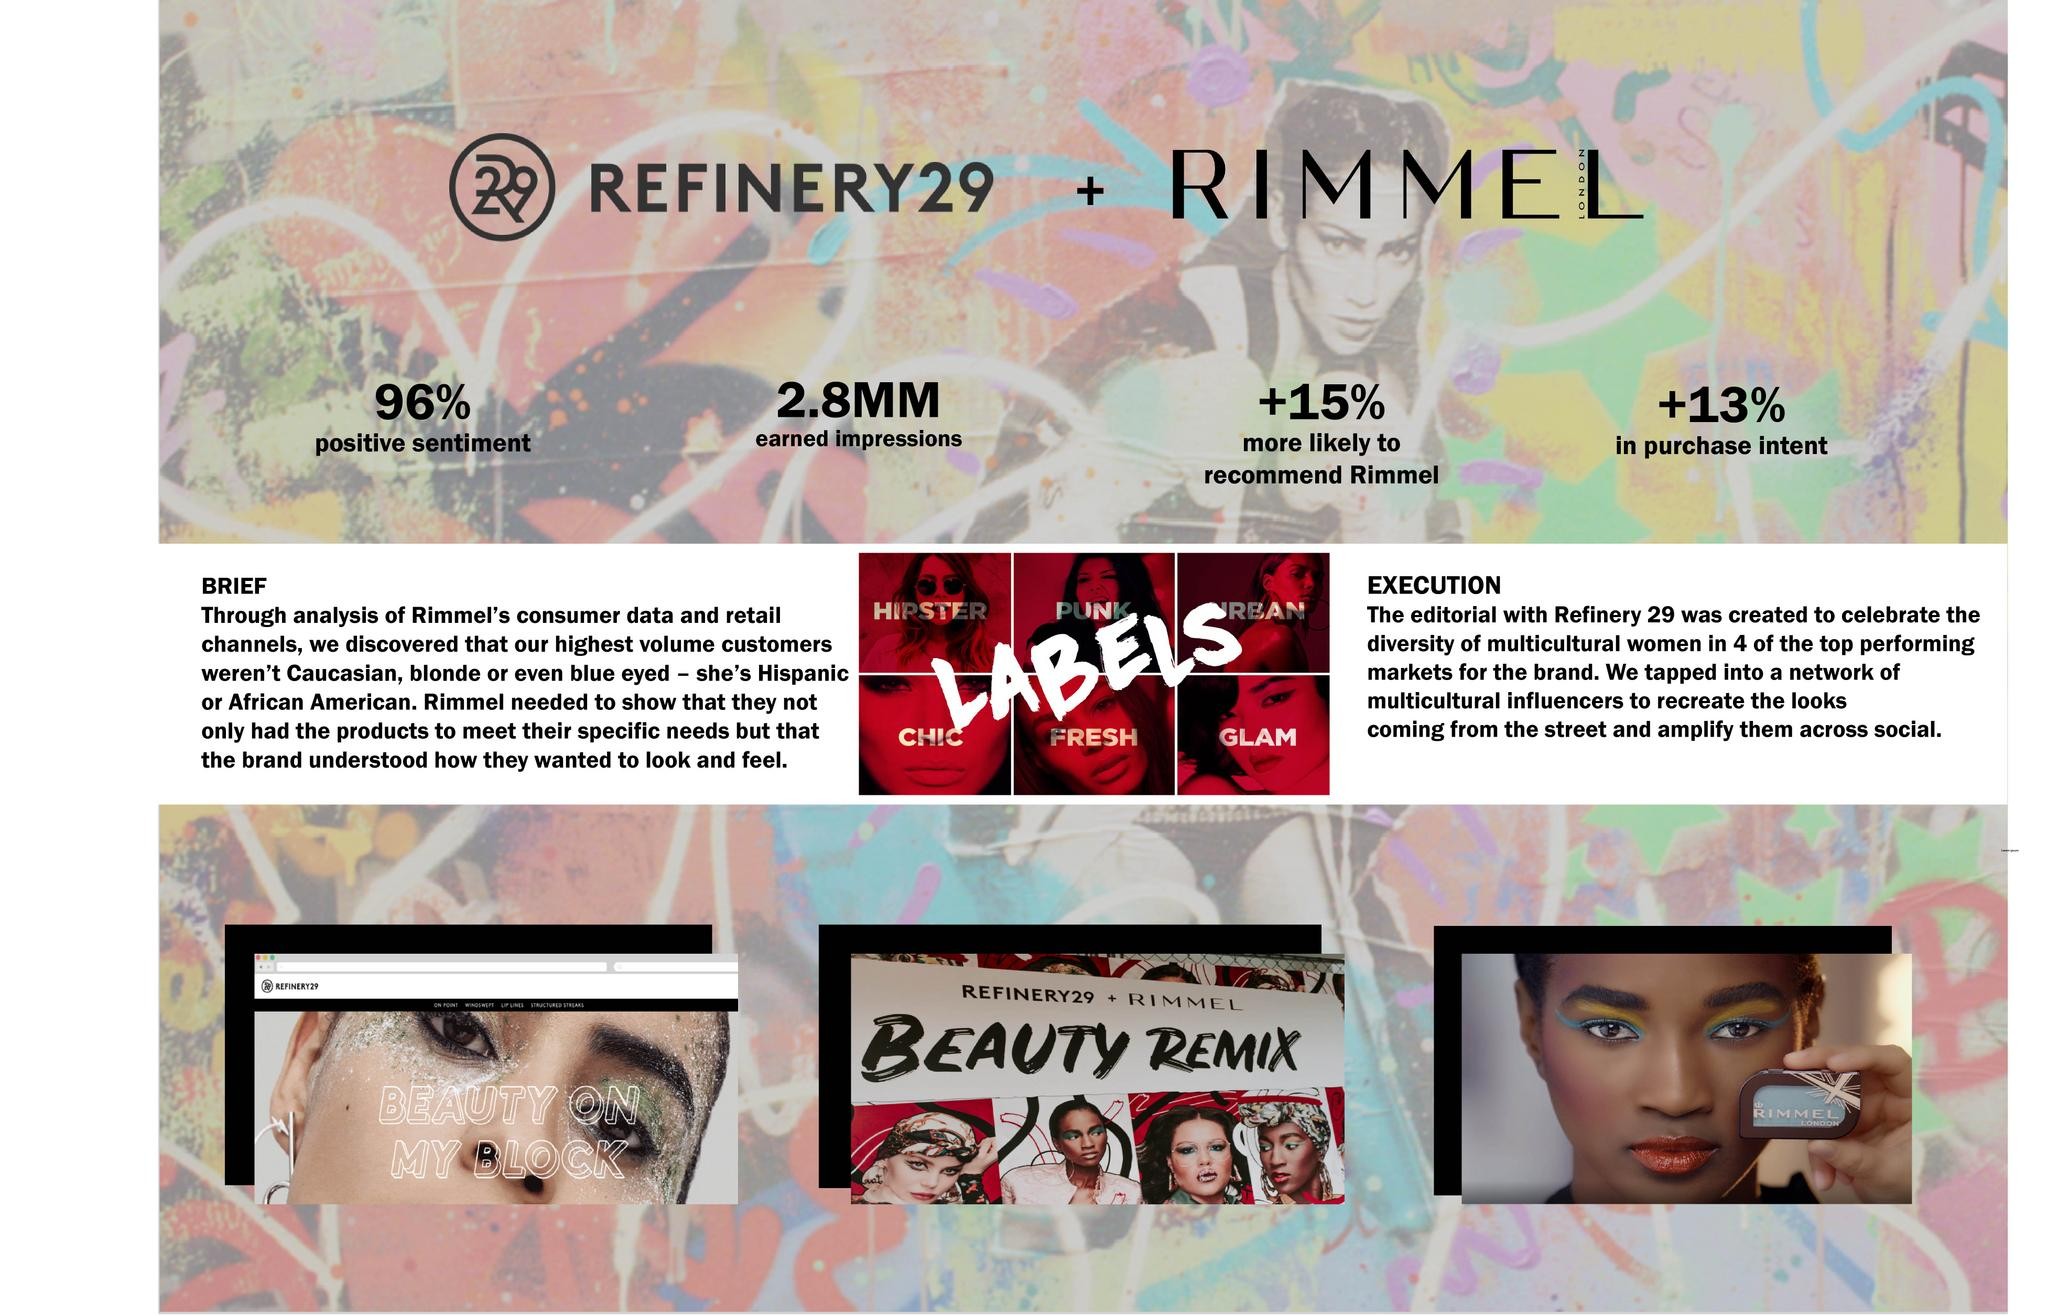 Rimmel + Refinery 29 “Beauty on My Block”